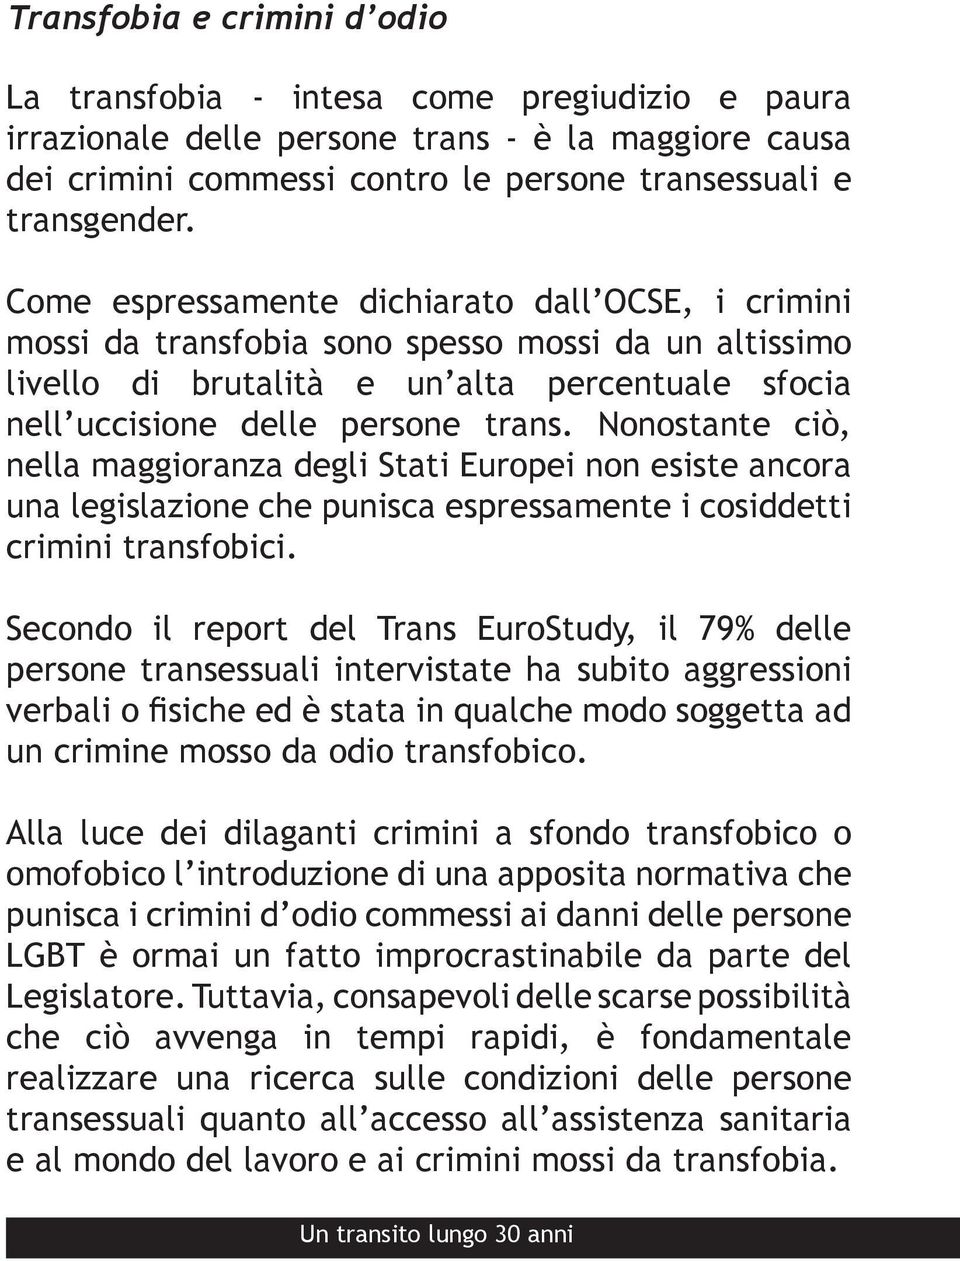 Nonostante ciò, nella maggioranza degli Stati Europei non esiste ancora una legislazione che punisca espressamente i cosiddetti crimini transfobici.